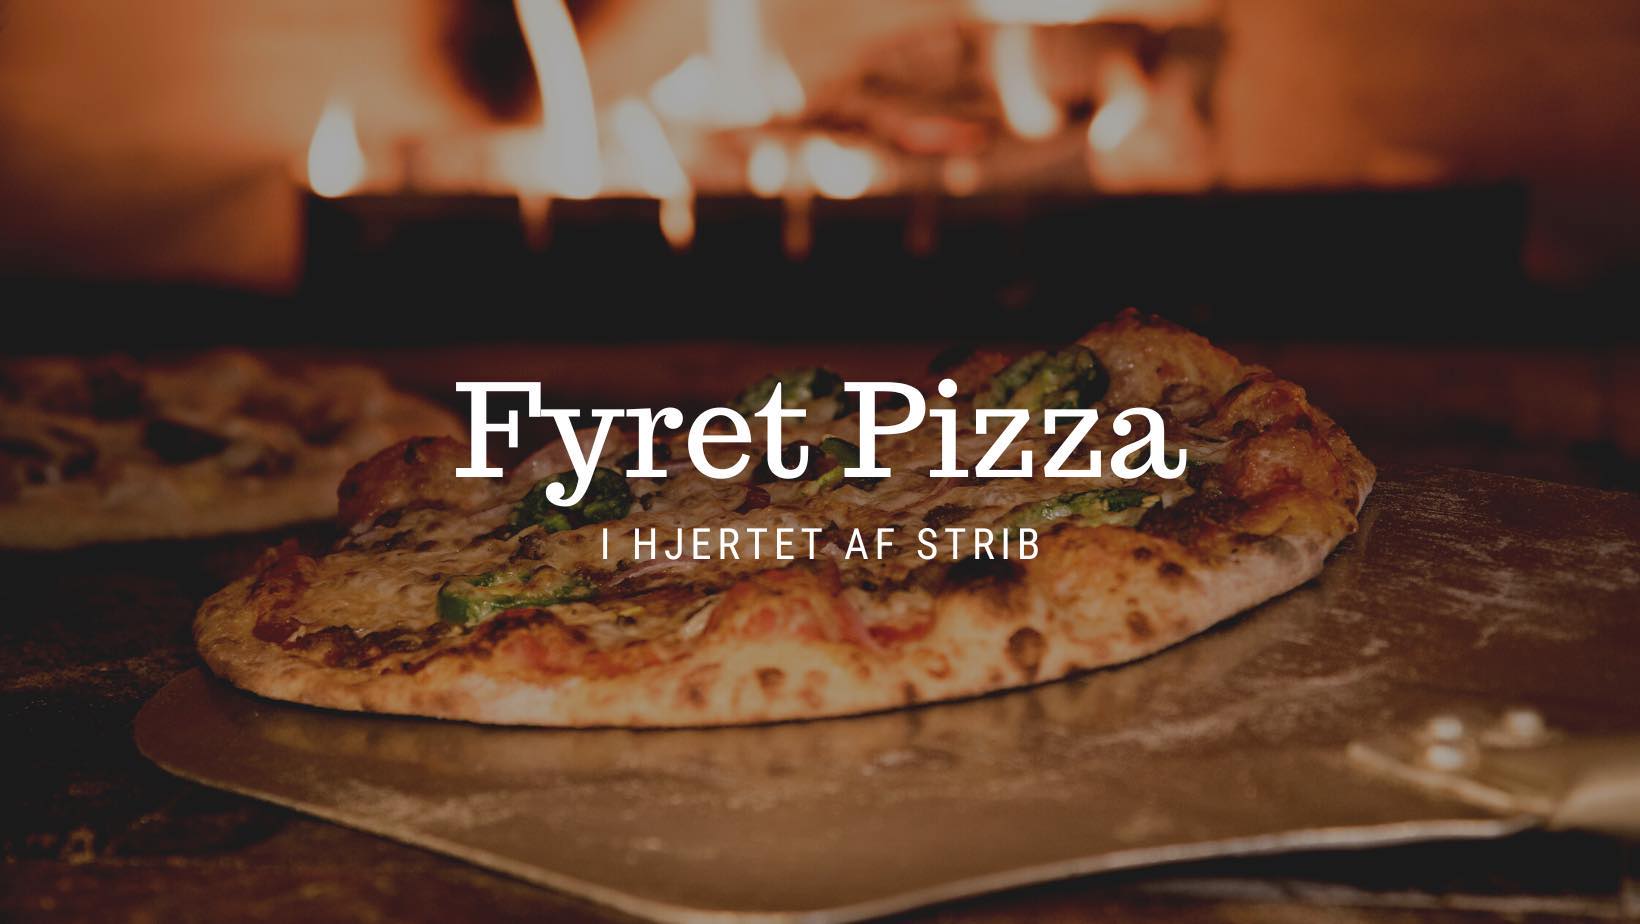  Fyret Pizza header image